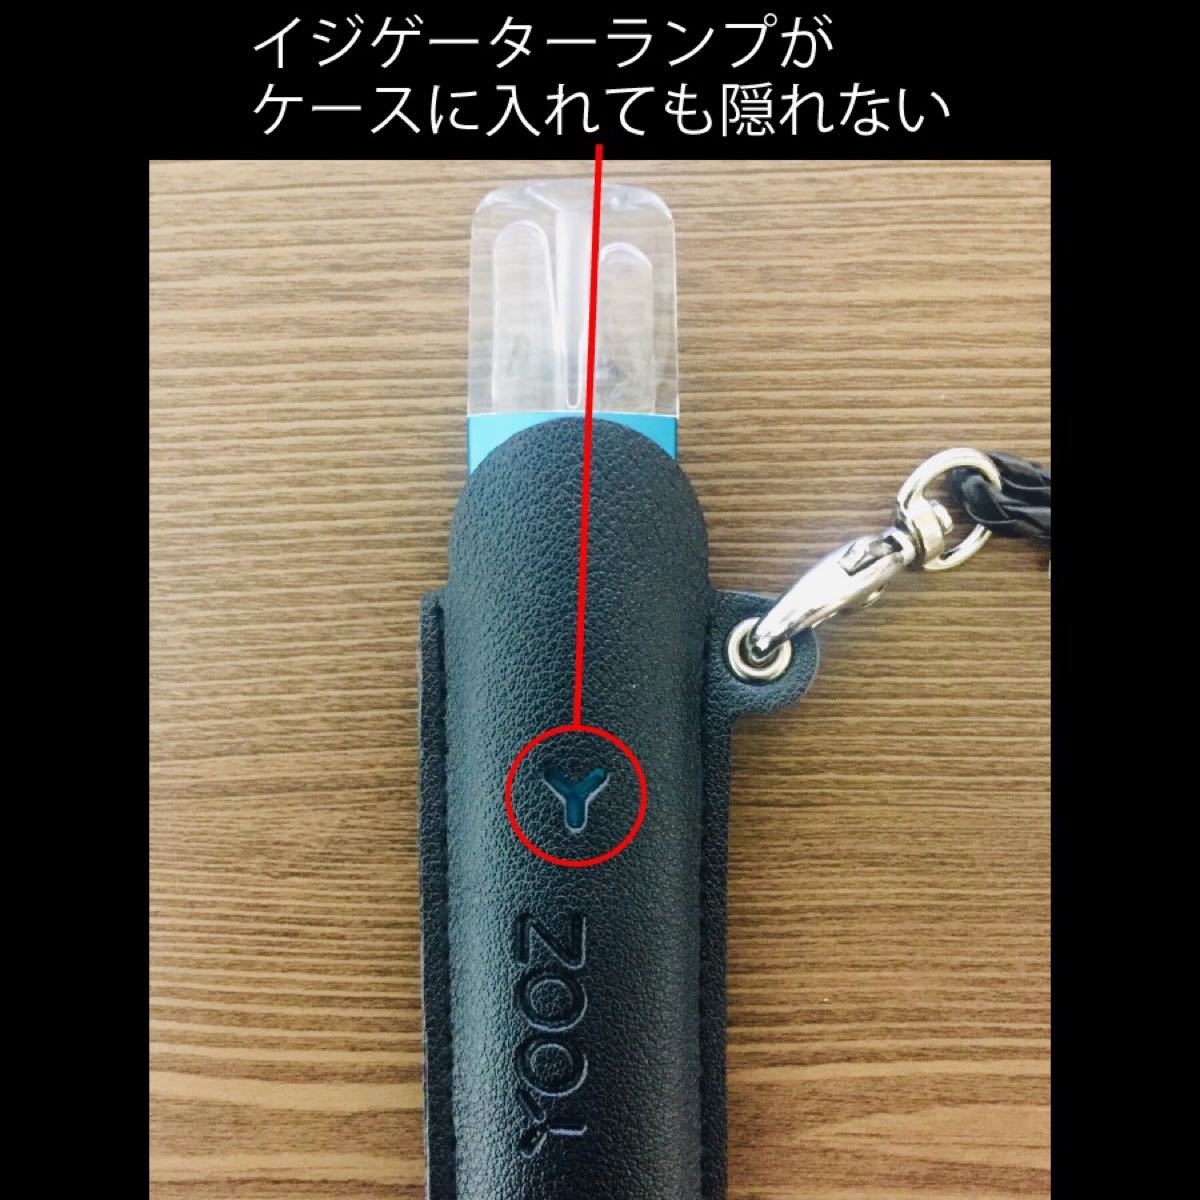 269円 【超安い】 黒 YOOZ ヨーズ デバイス用 ネックストラップ付き レザーケース ブラック